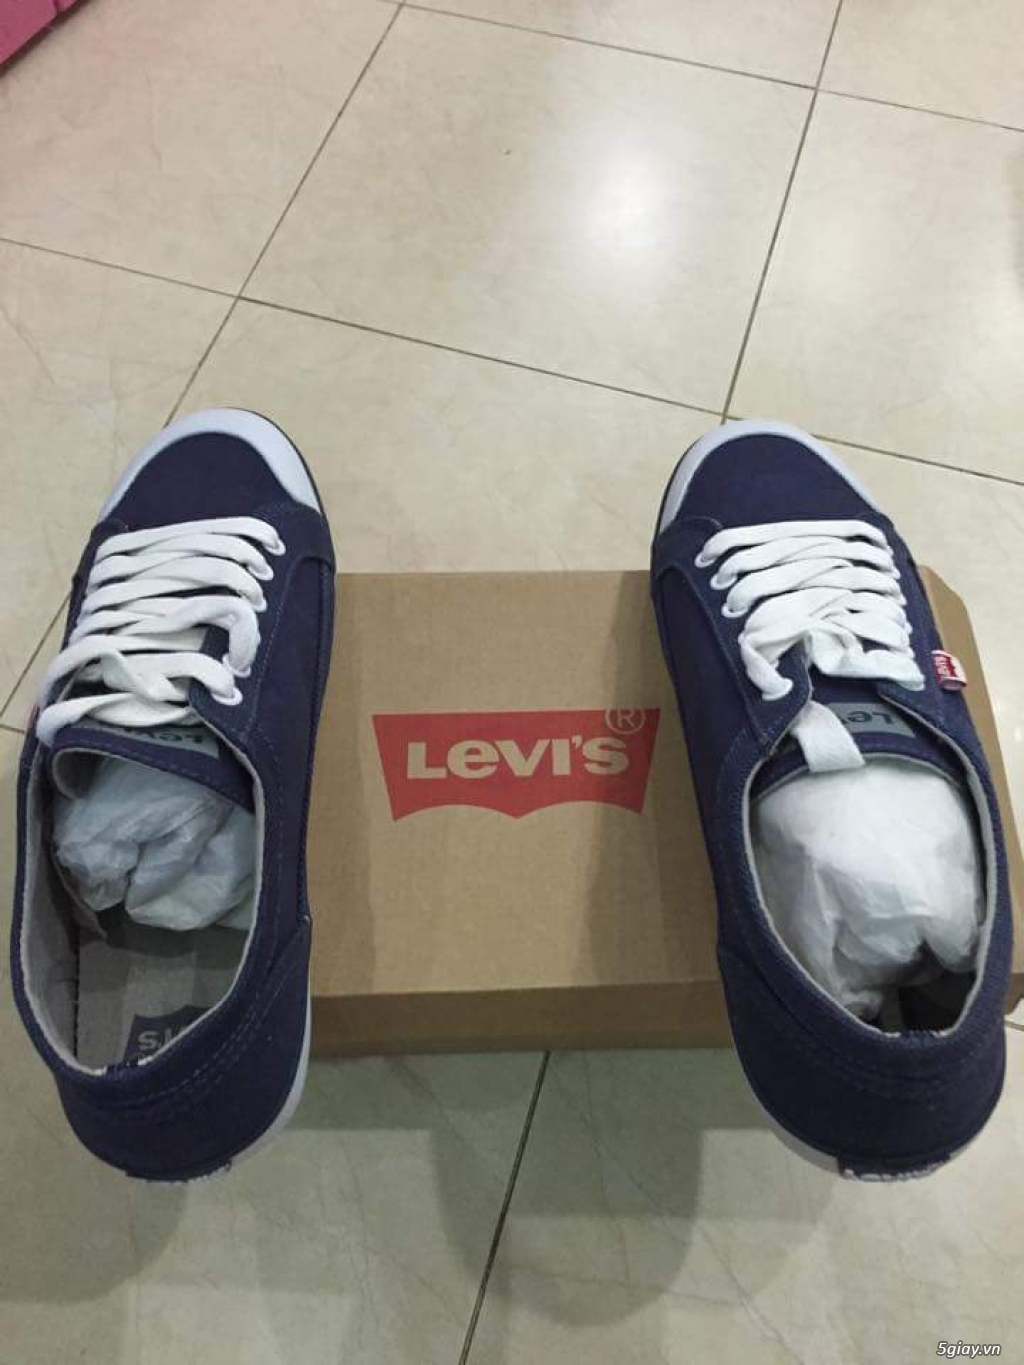 Bán giày levi's new 100% - 1